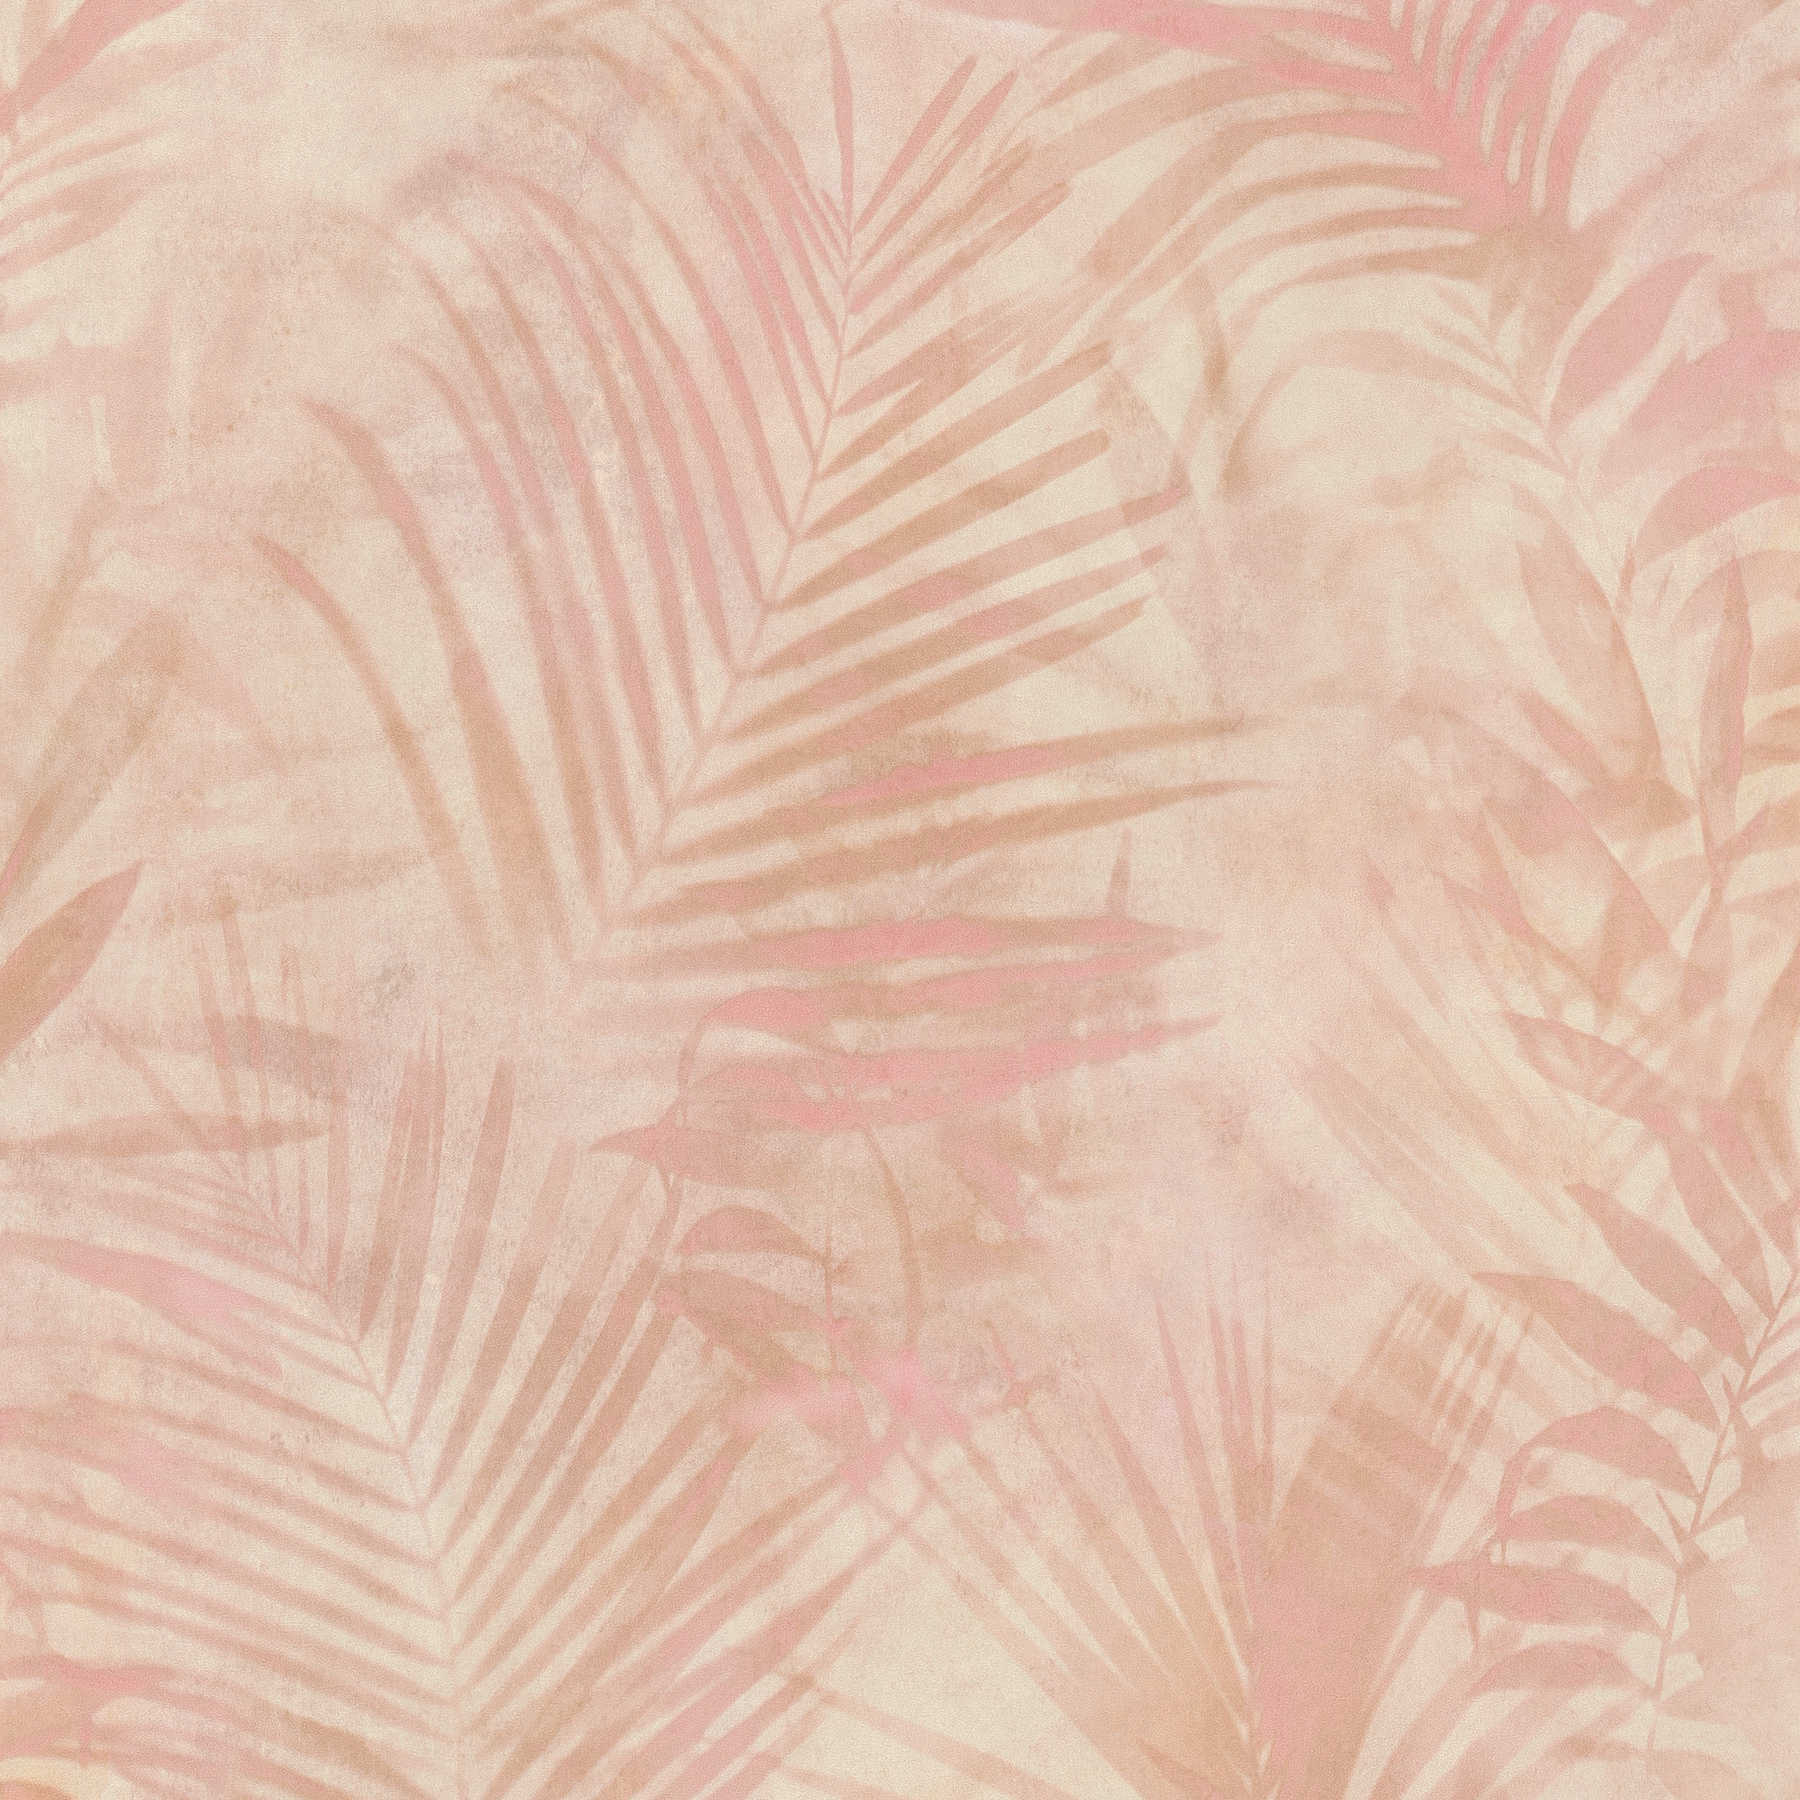 behang palmboom patroon in linnen look - roze, beige, crème
